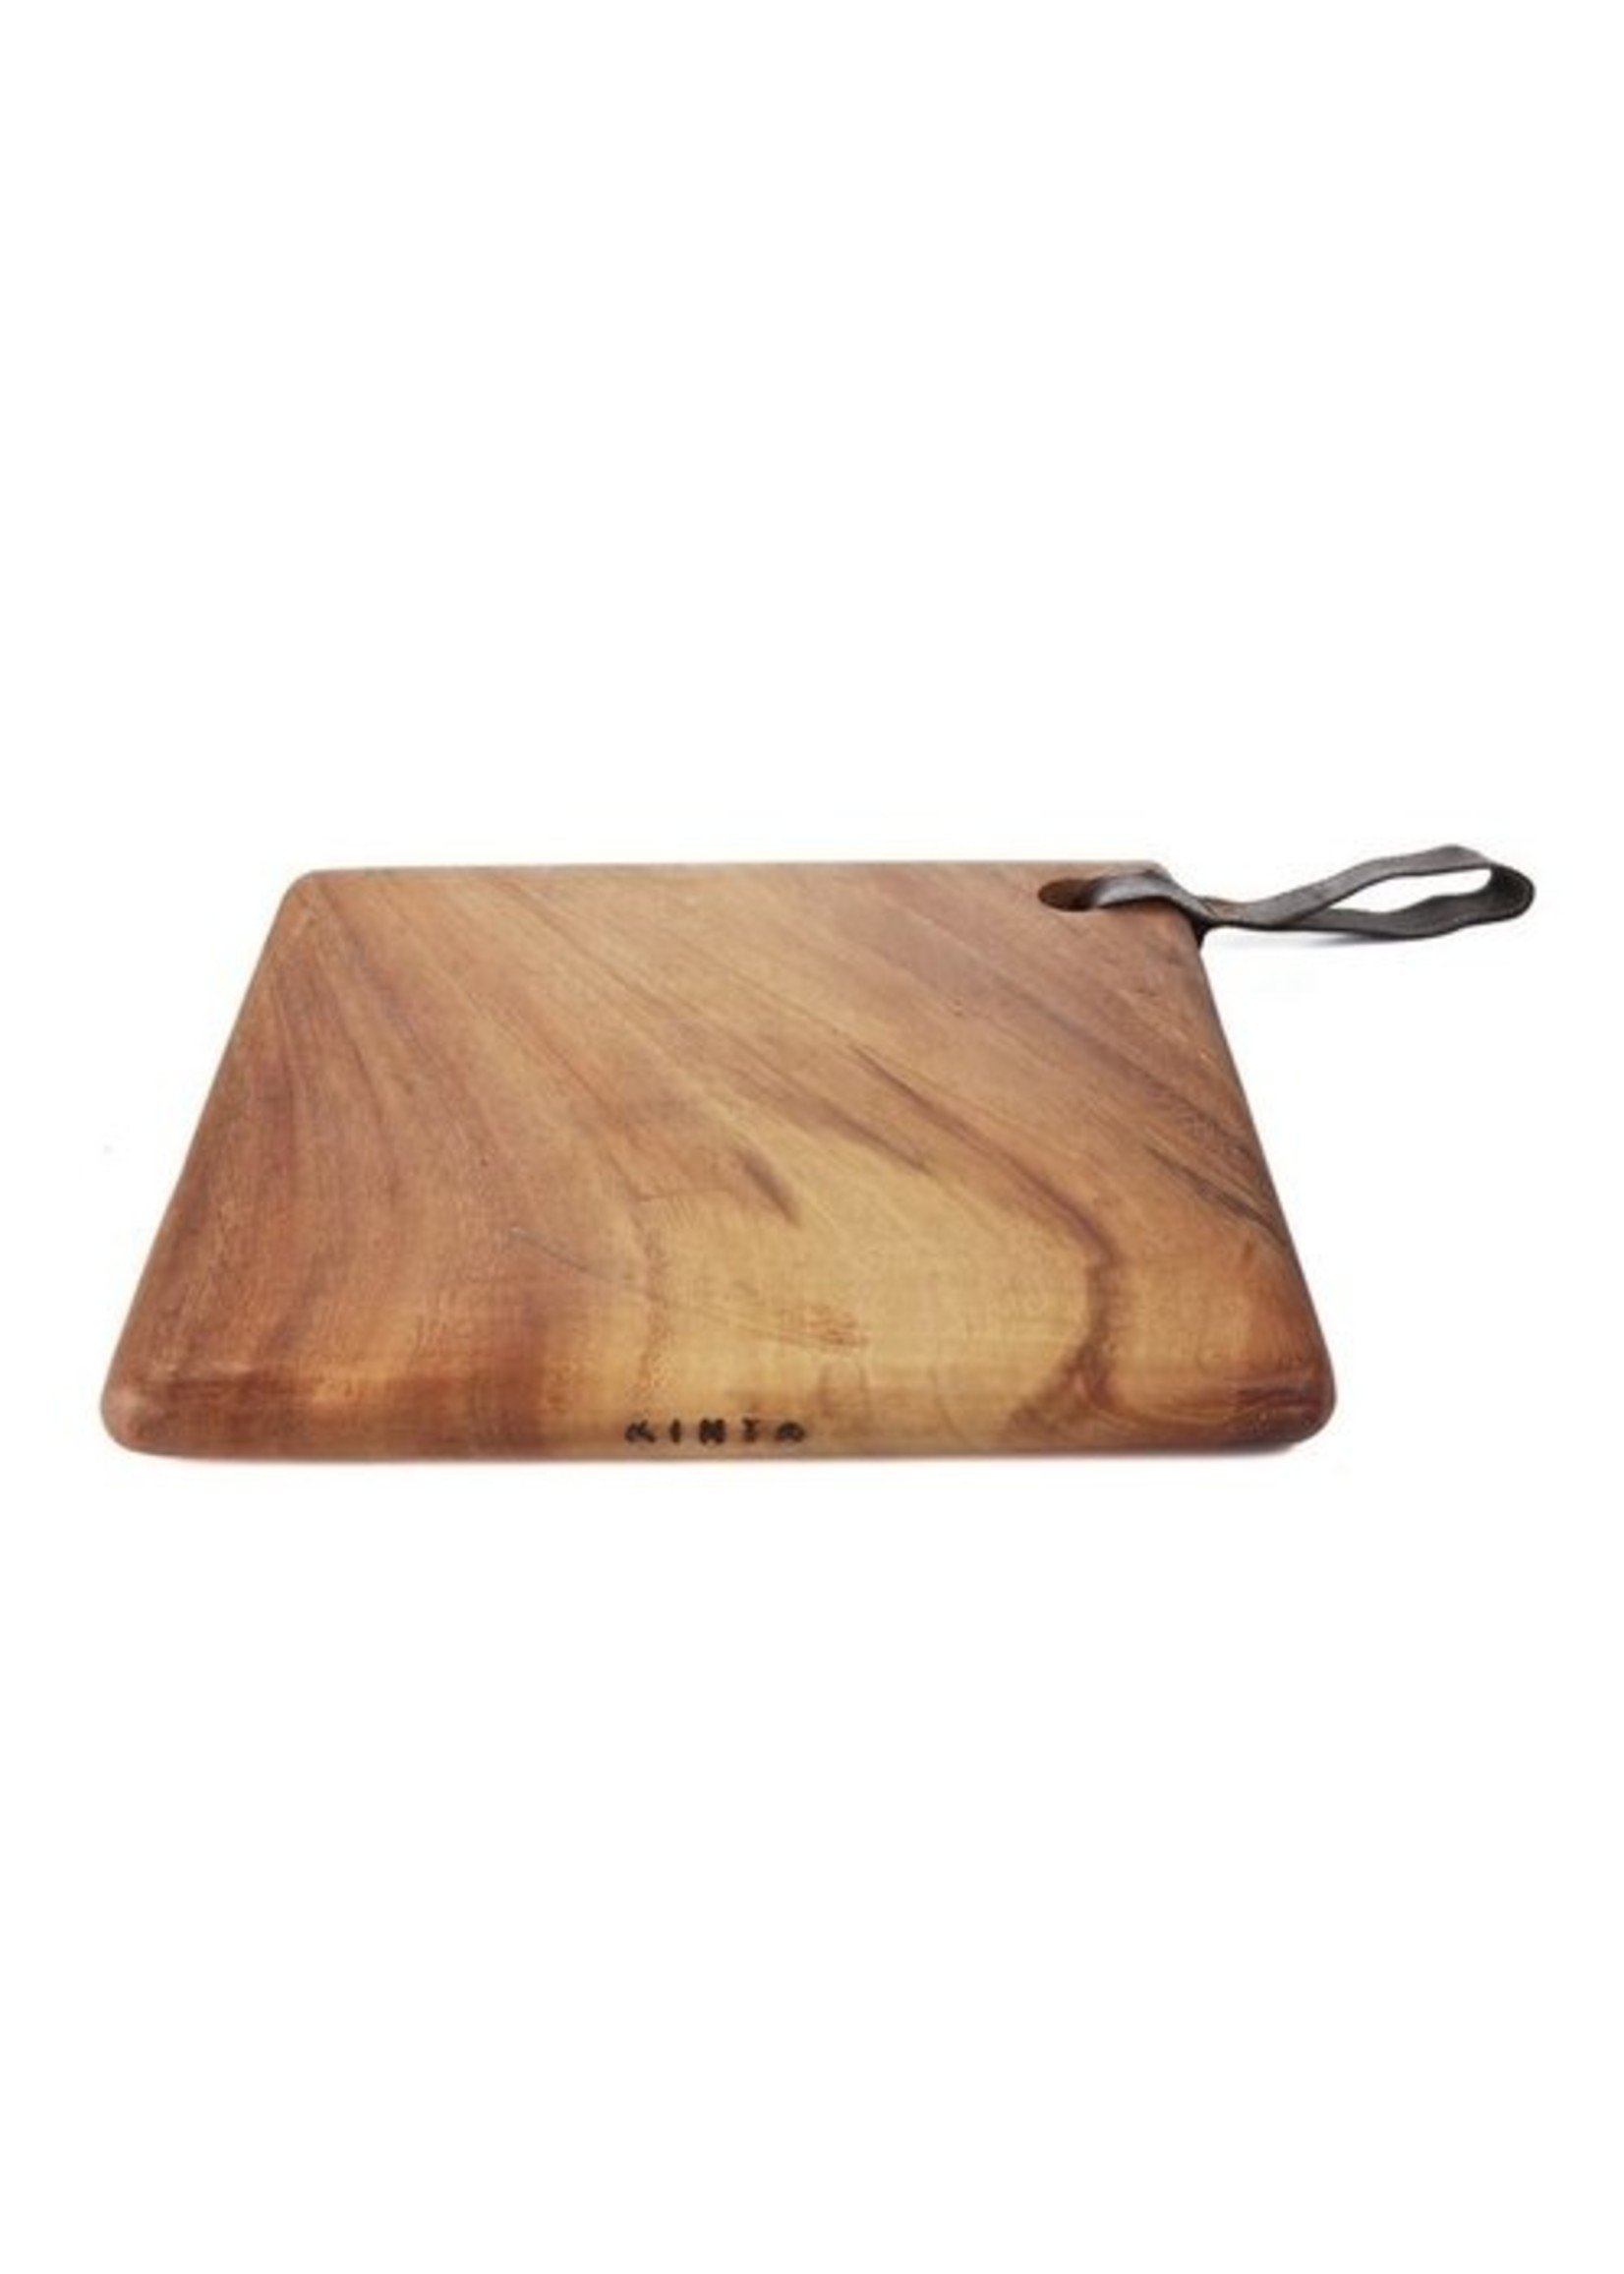 Kinta Wooding cuttingboard 25x25cm - rubber handle